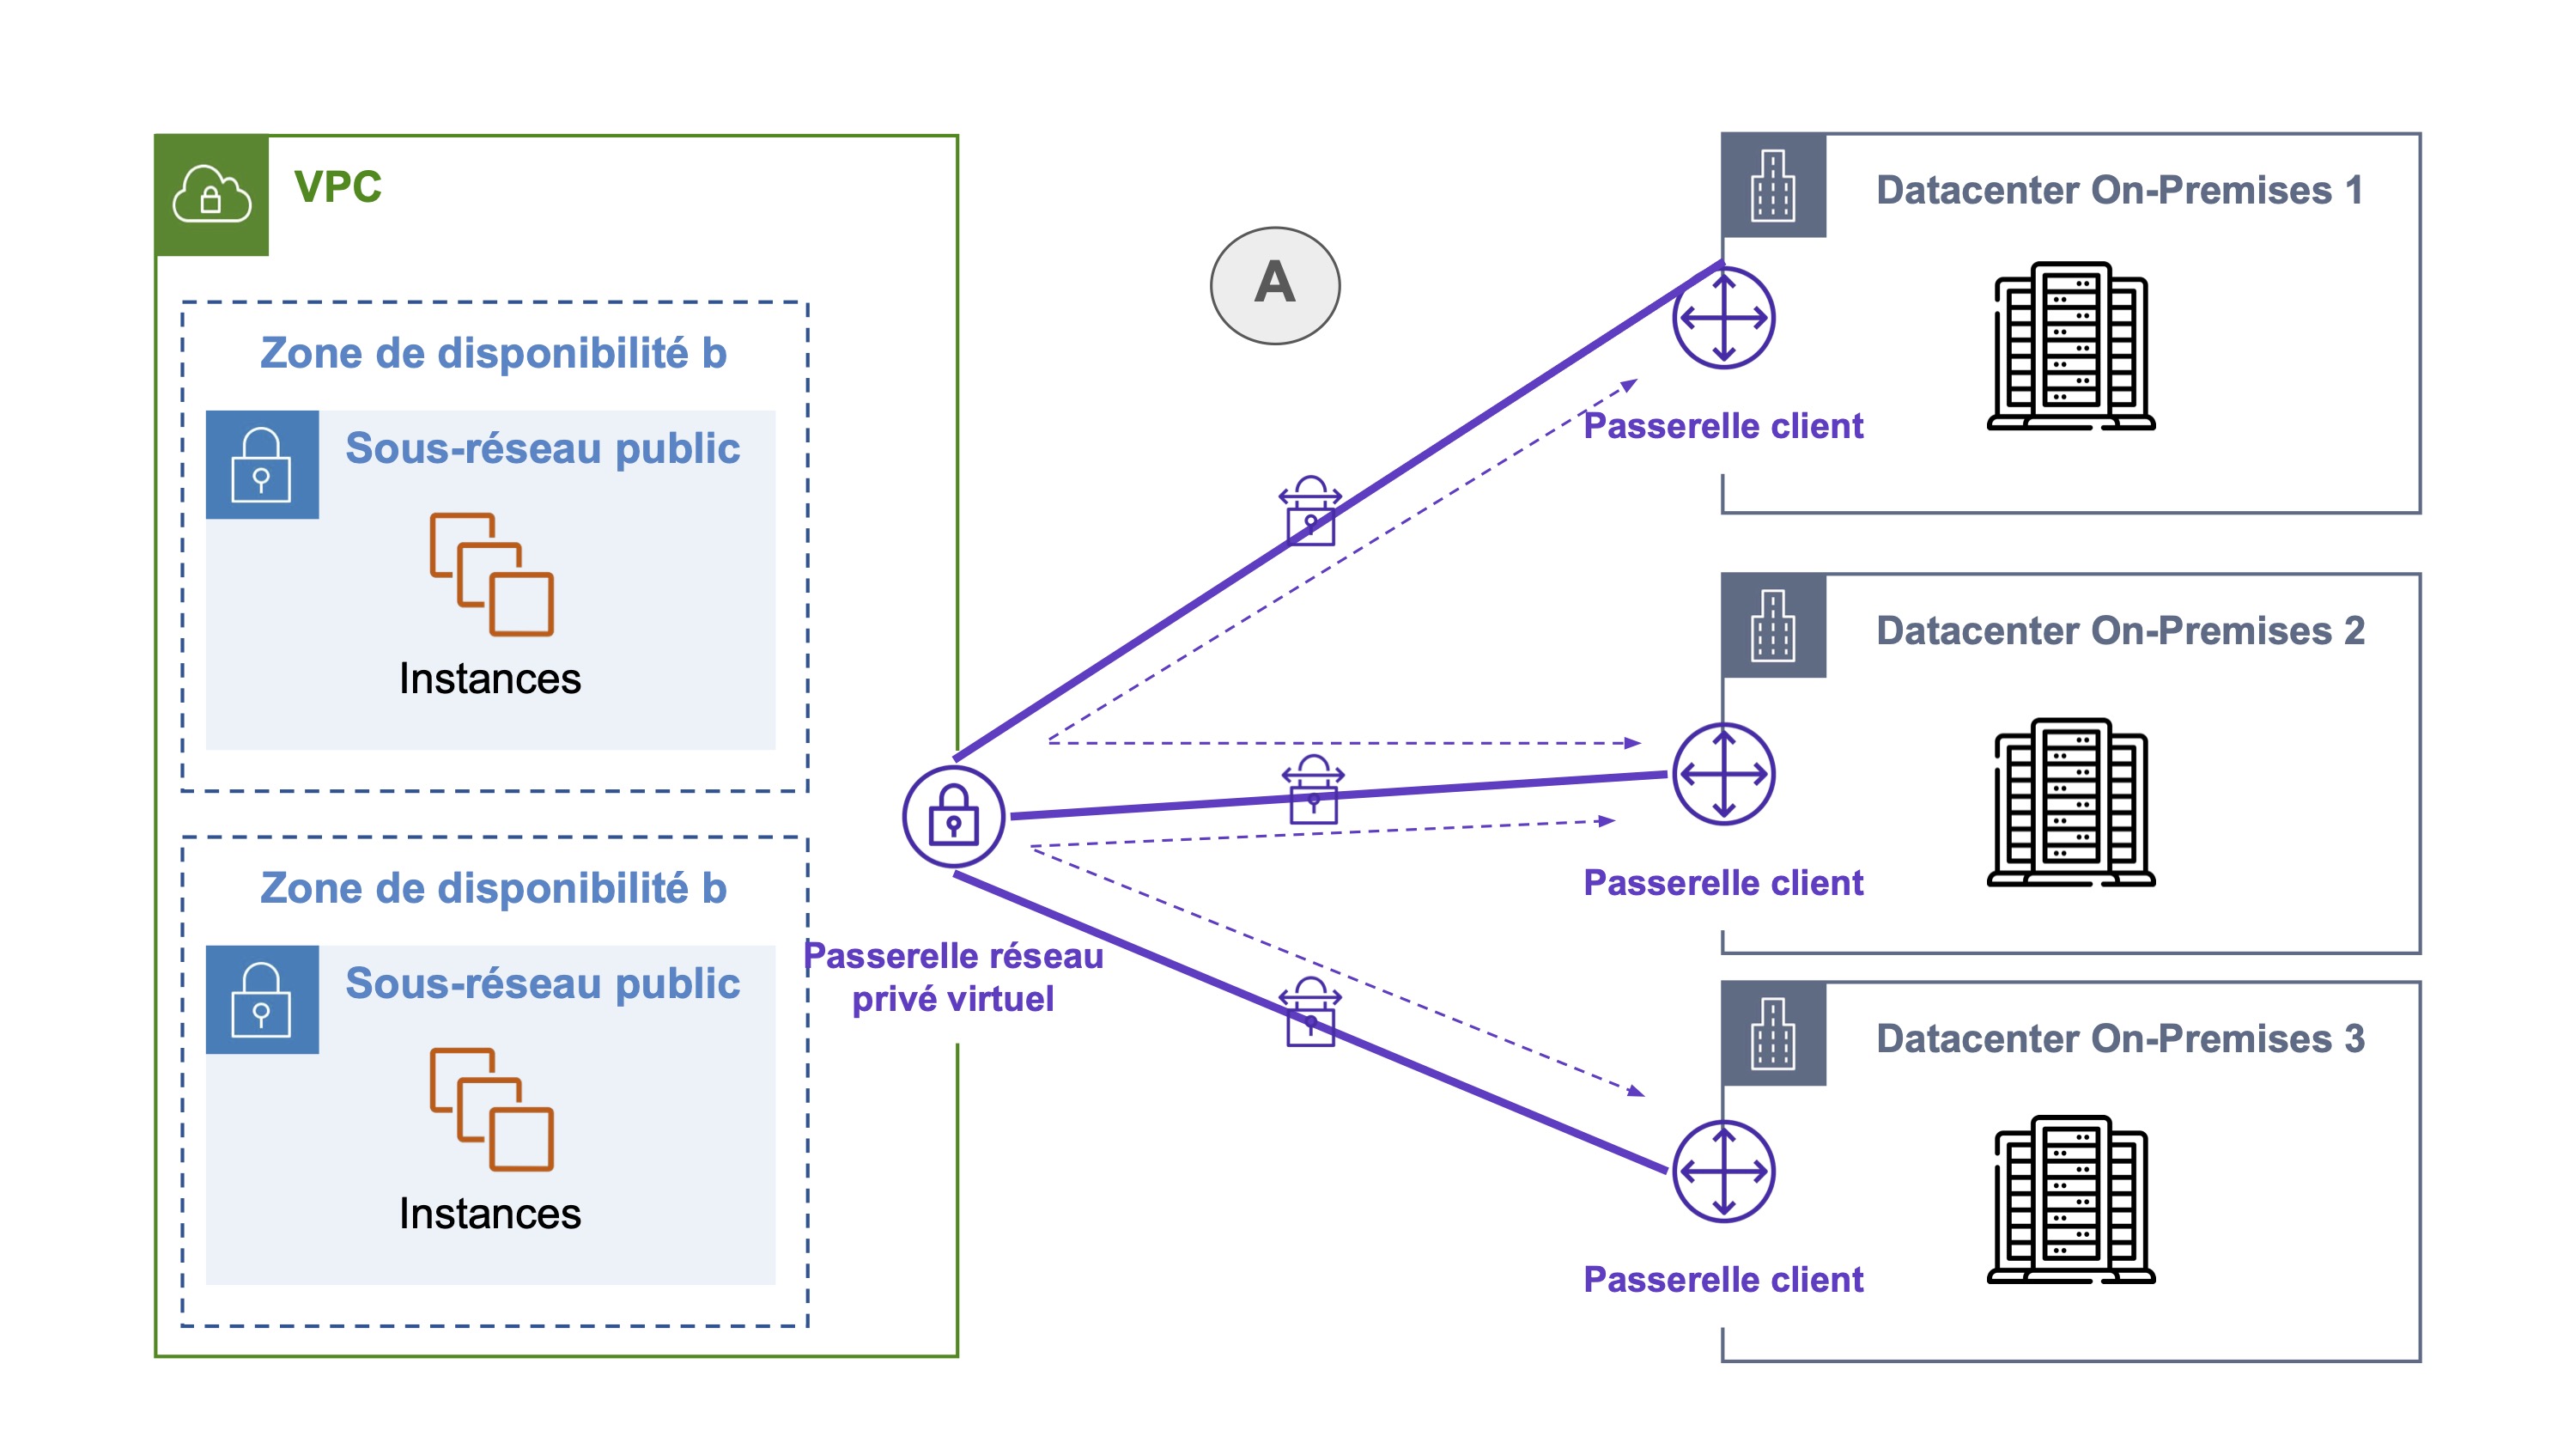 Un VPC comporte deux zones de disponibilité avec les sous-réseaux publics et les instances. Son passerelle réseau privé virtuel est lié par trois flèches (A) avec les passerelles client de trois datacenters on-premises